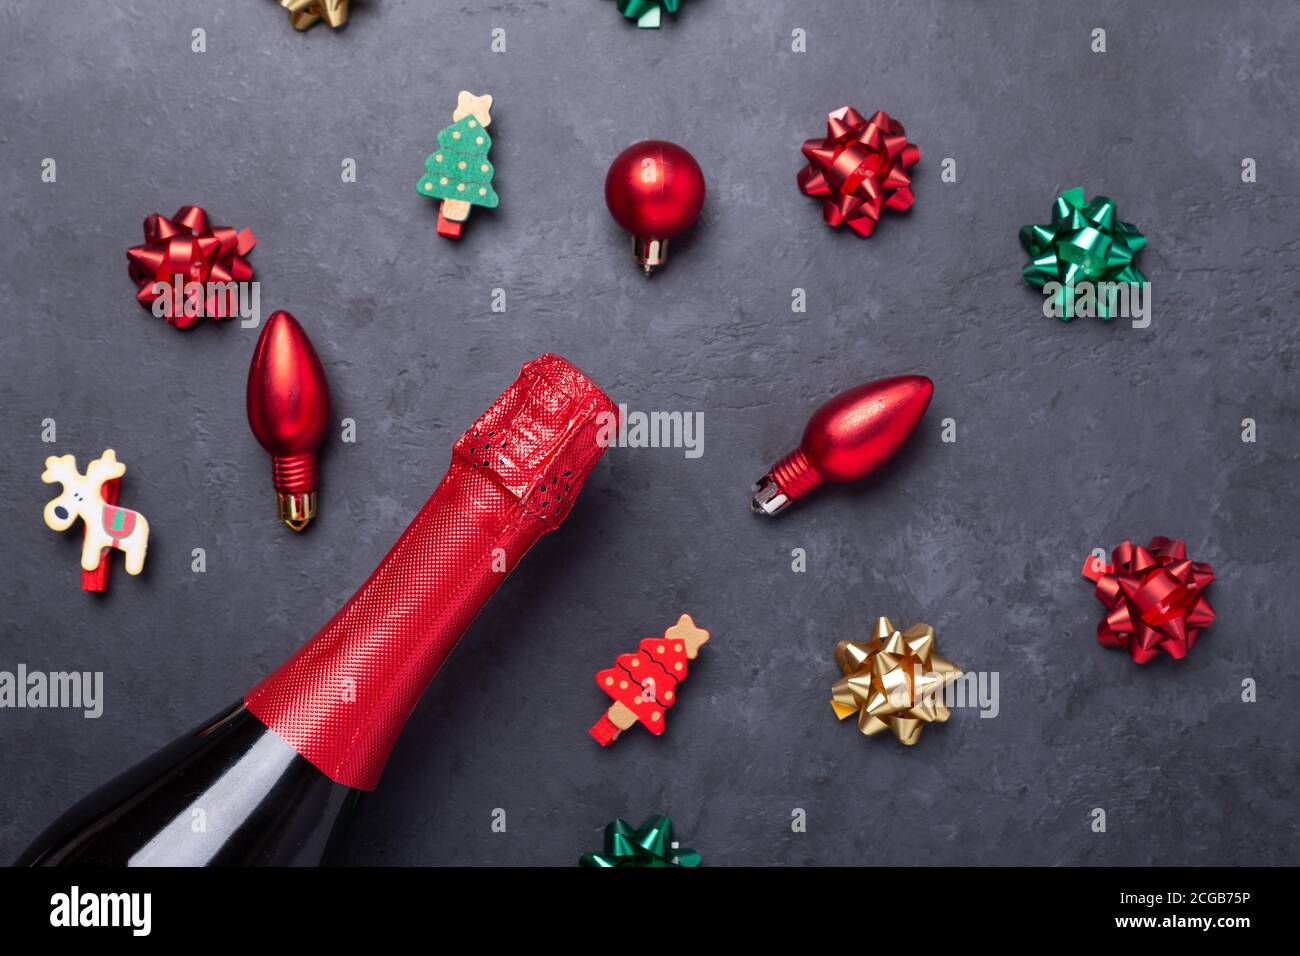 Composizione natalizia con champagne e regali rossi, verdi, dorati e archi su sfondo di pietra scuro. Concetto di Natale e Capodanno - immagine Foto Stock